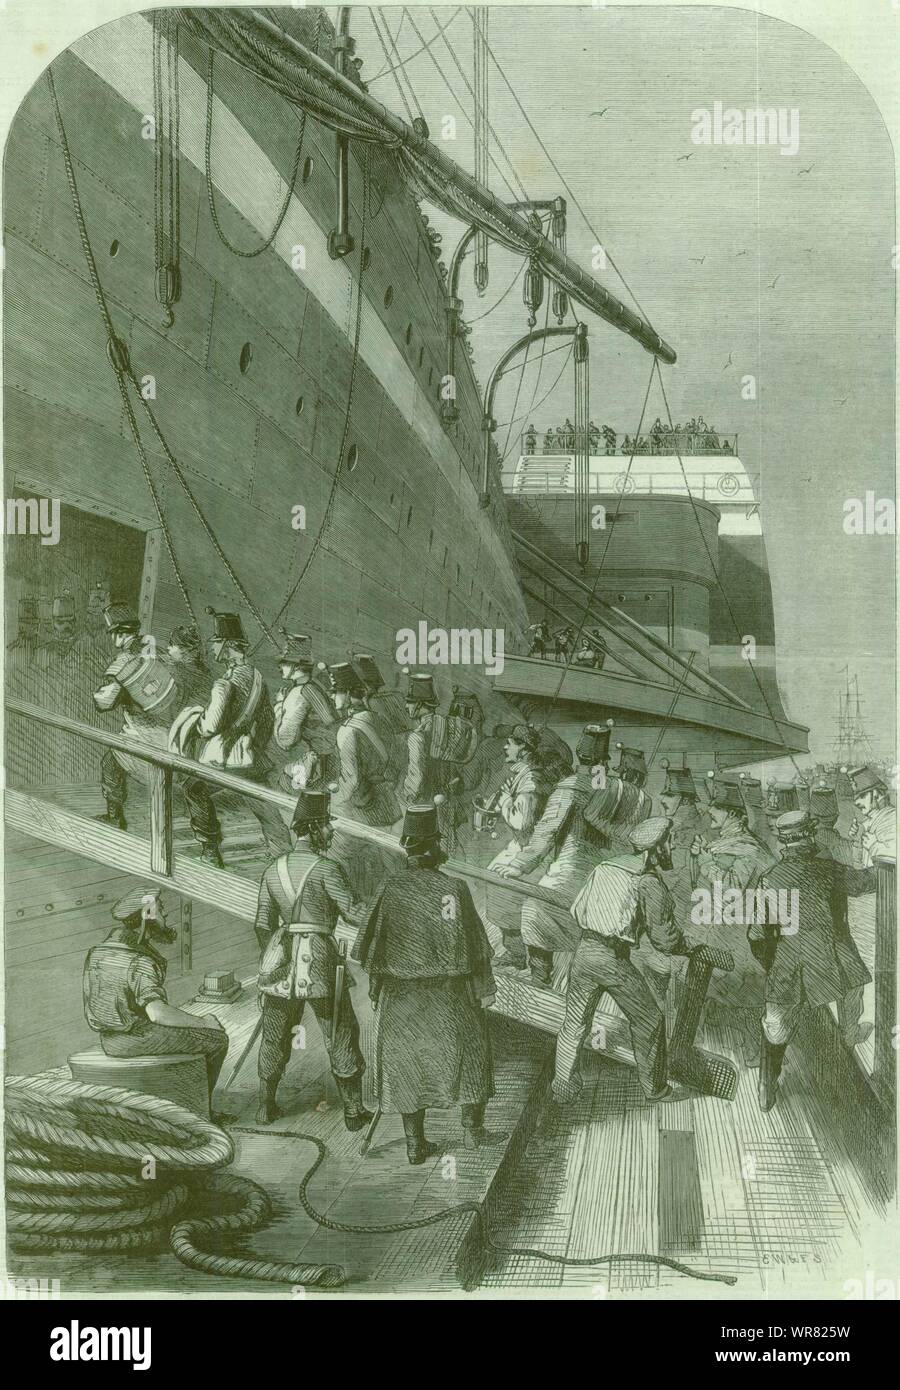 SS Great Eastern Mersey contingente canadiense soldados embarcarse. Liverpool 1861 Foto de stock